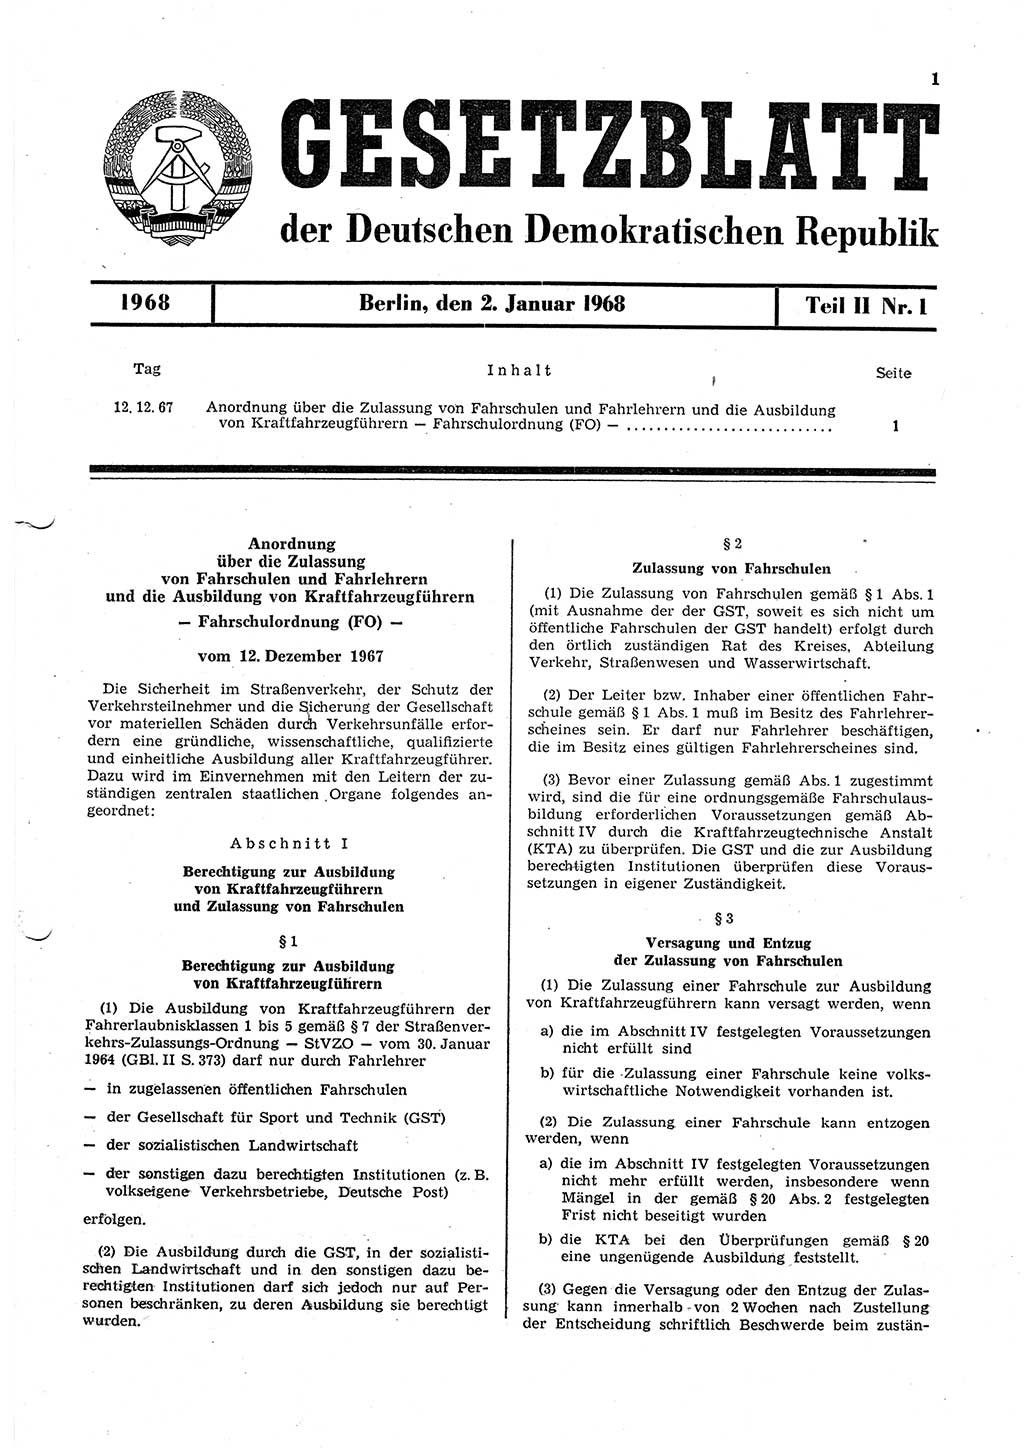 Gesetzblatt (GBl.) der Deutschen Demokratischen Republik (DDR) Teil ⅠⅠ 1968, Seite 1 (GBl. DDR ⅠⅠ 1968, S. 1)